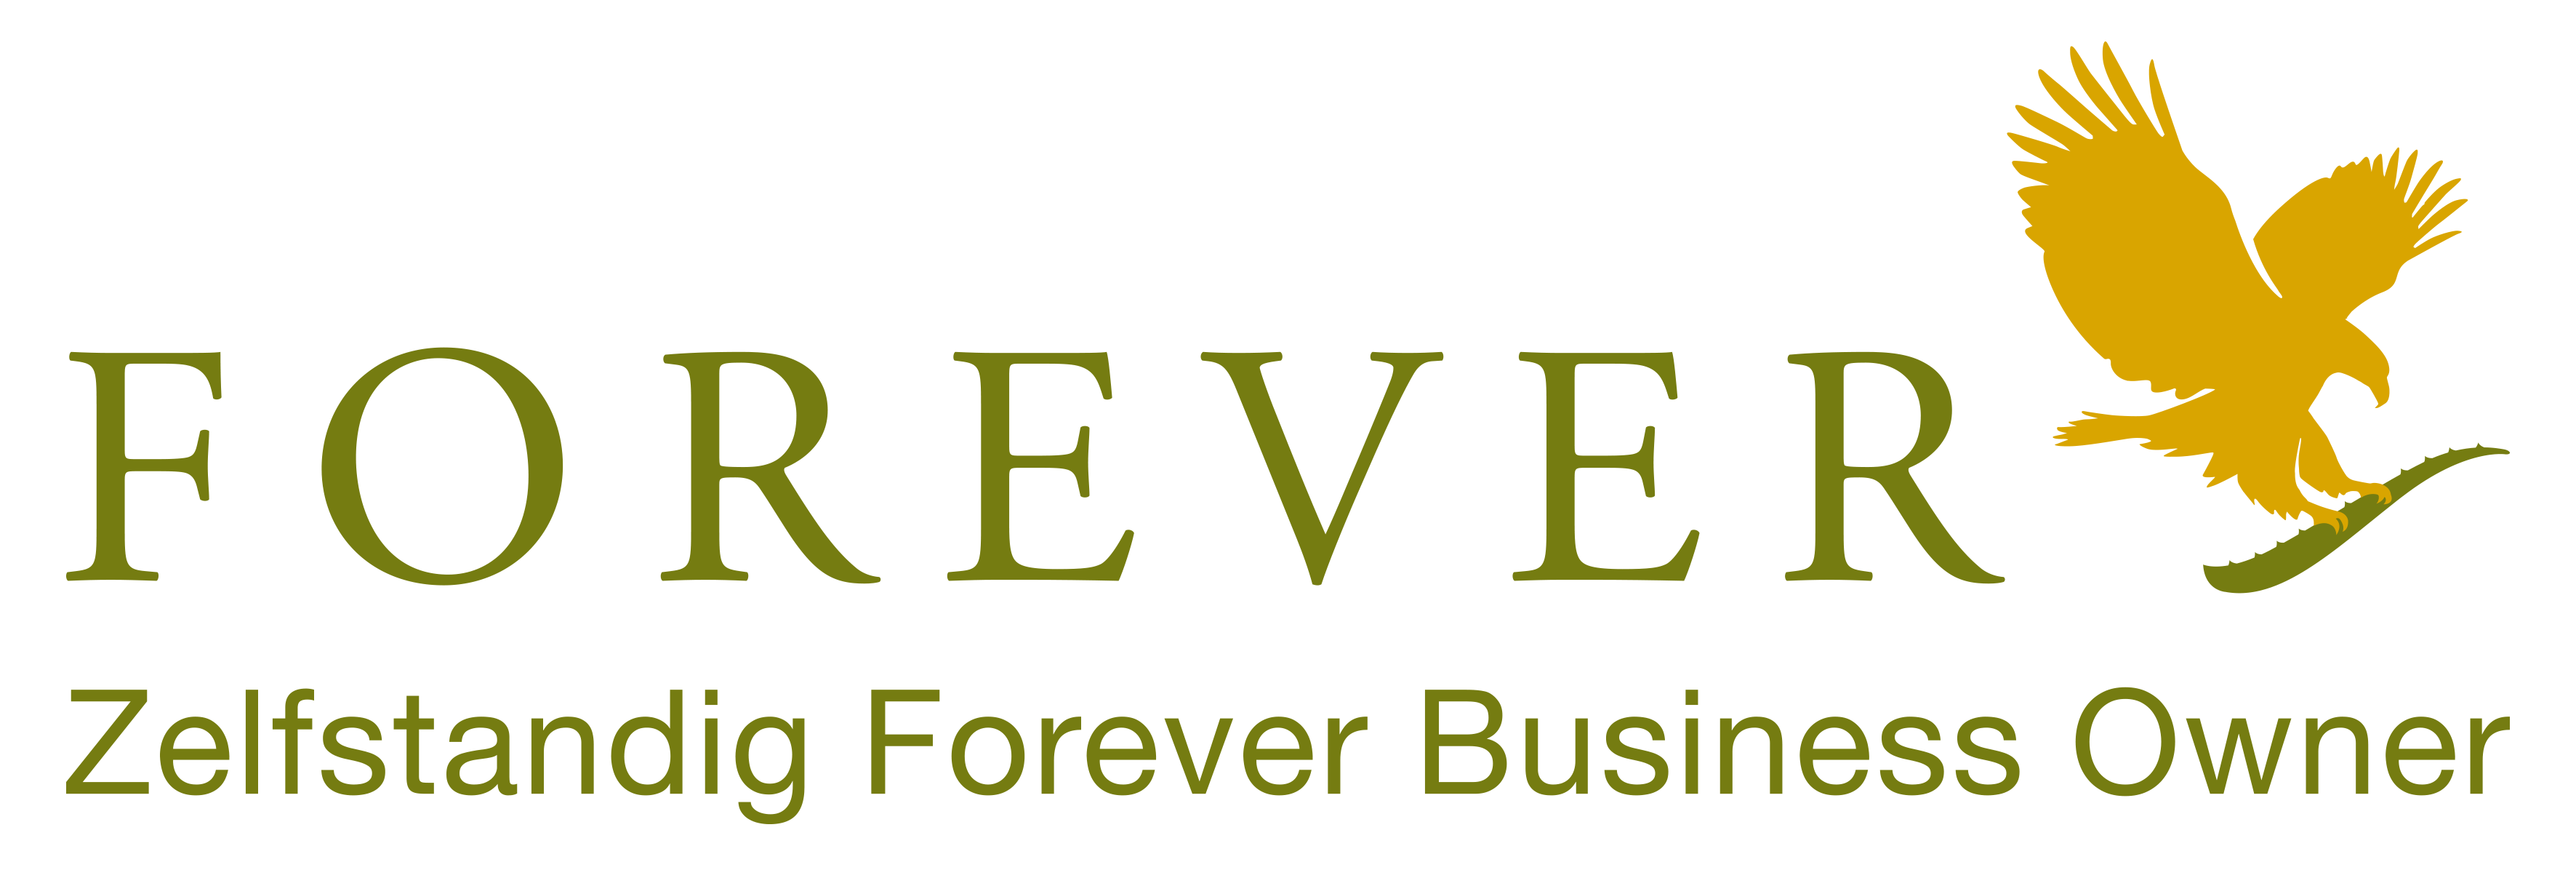 Forever Aloe vera suministra productos Forever a clientes de Bélgica y Francia como Empresario Independiente de Forever Living. Compre sus productos Forever Living en Bélgica, Países Bajos, Luxemburgo y Francia